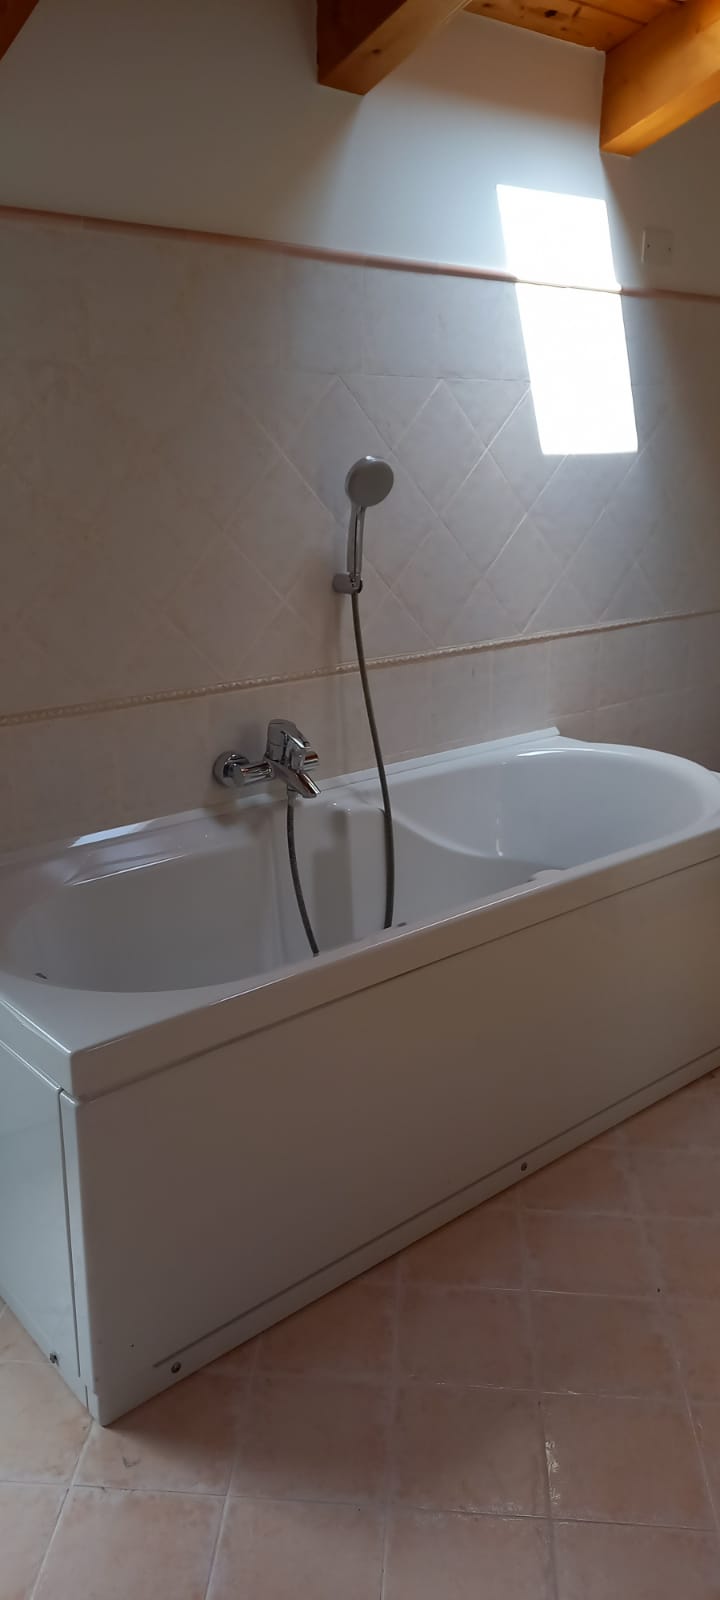 Ristrutturazione bagno con posa di vasca da bagno